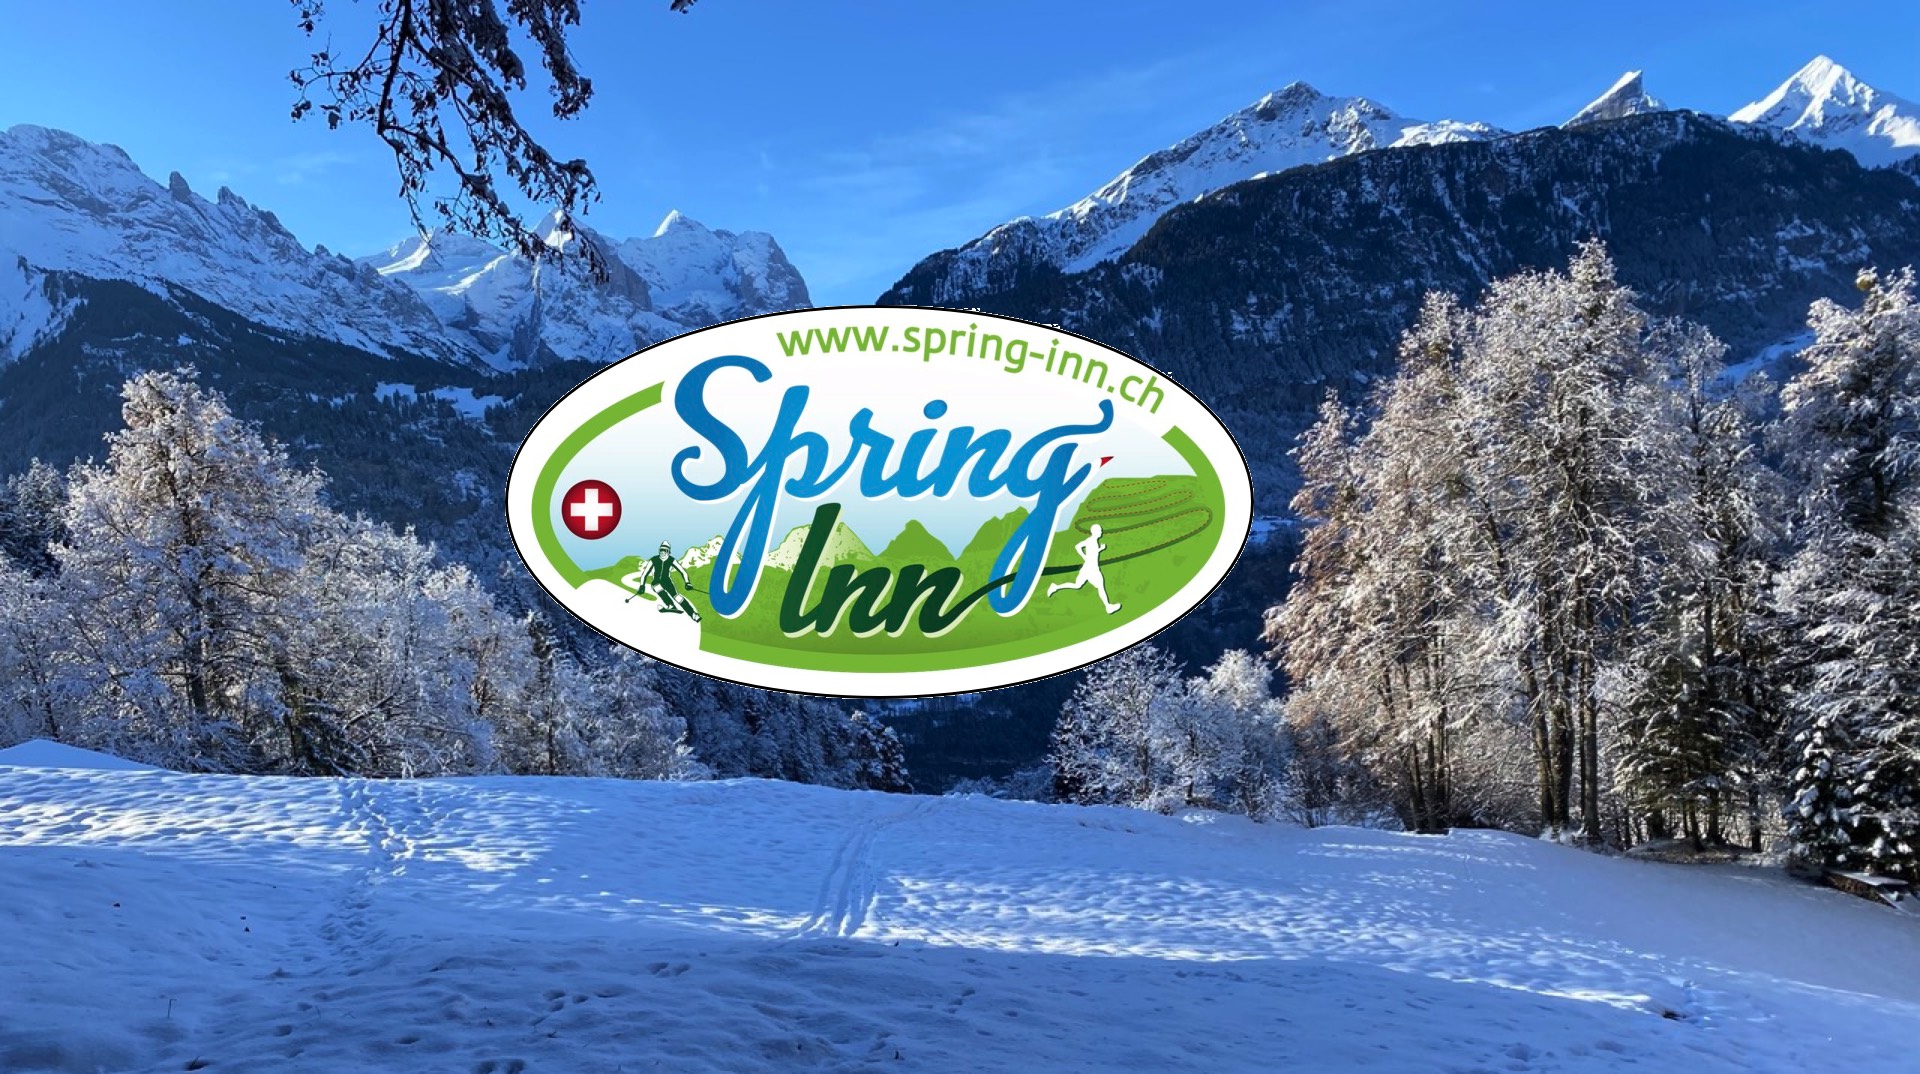 Spring Inn, Jungfrau region, Haslital. Come and enjoy the ski slopes on Hasliberg or the toboggan run from Grosse Scheidegg to Rosenlaui